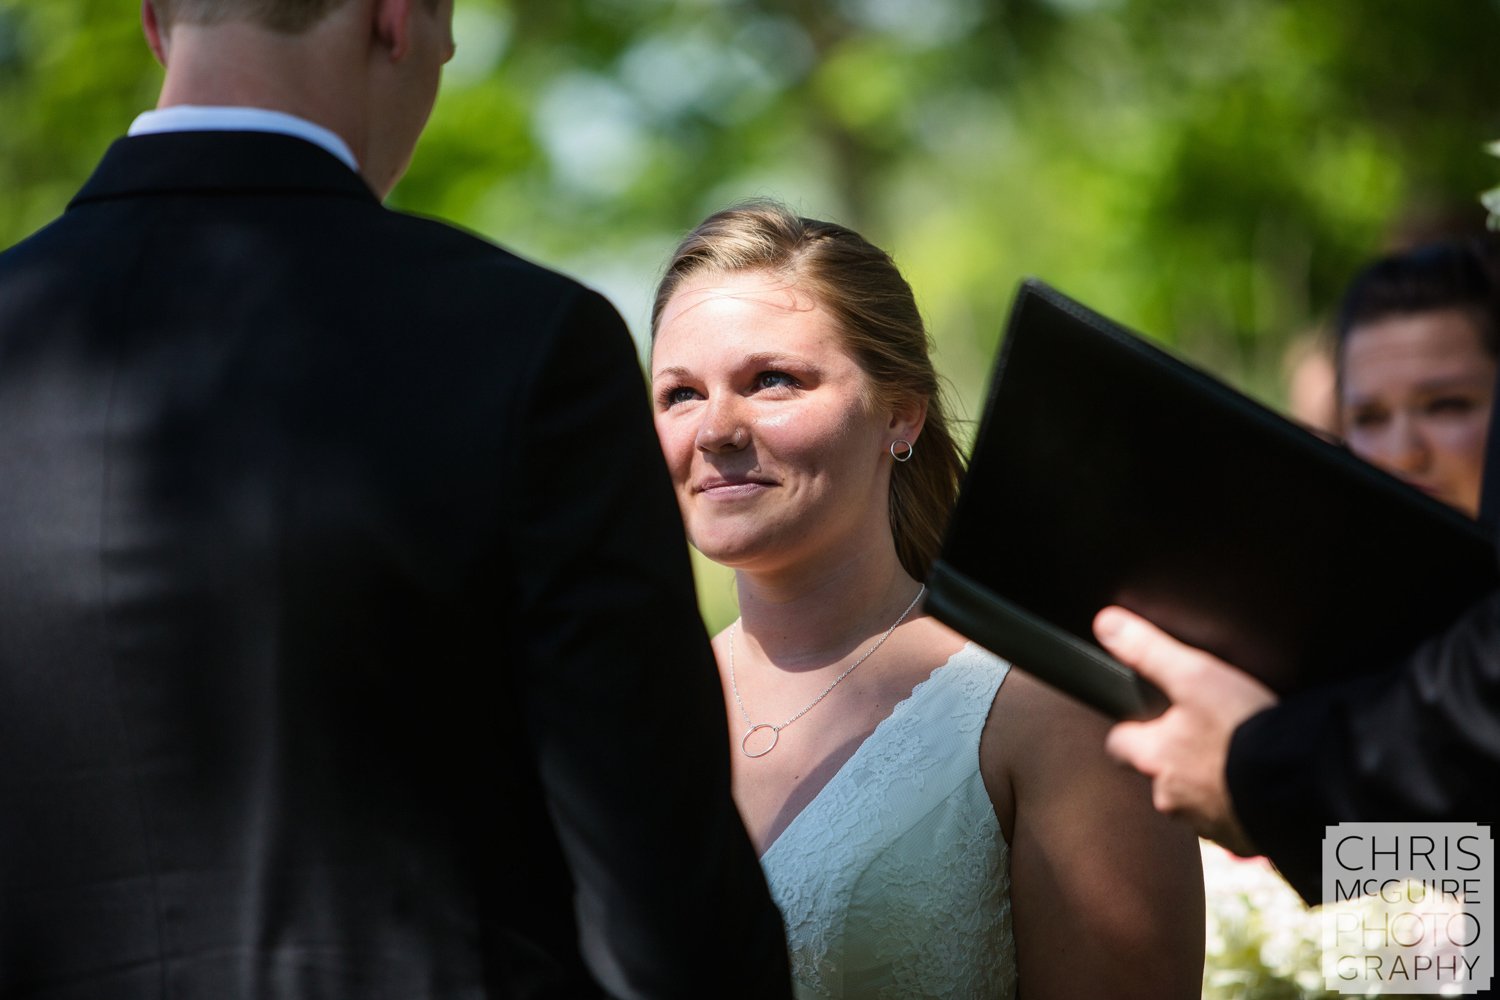 bride looking at groom during wedding